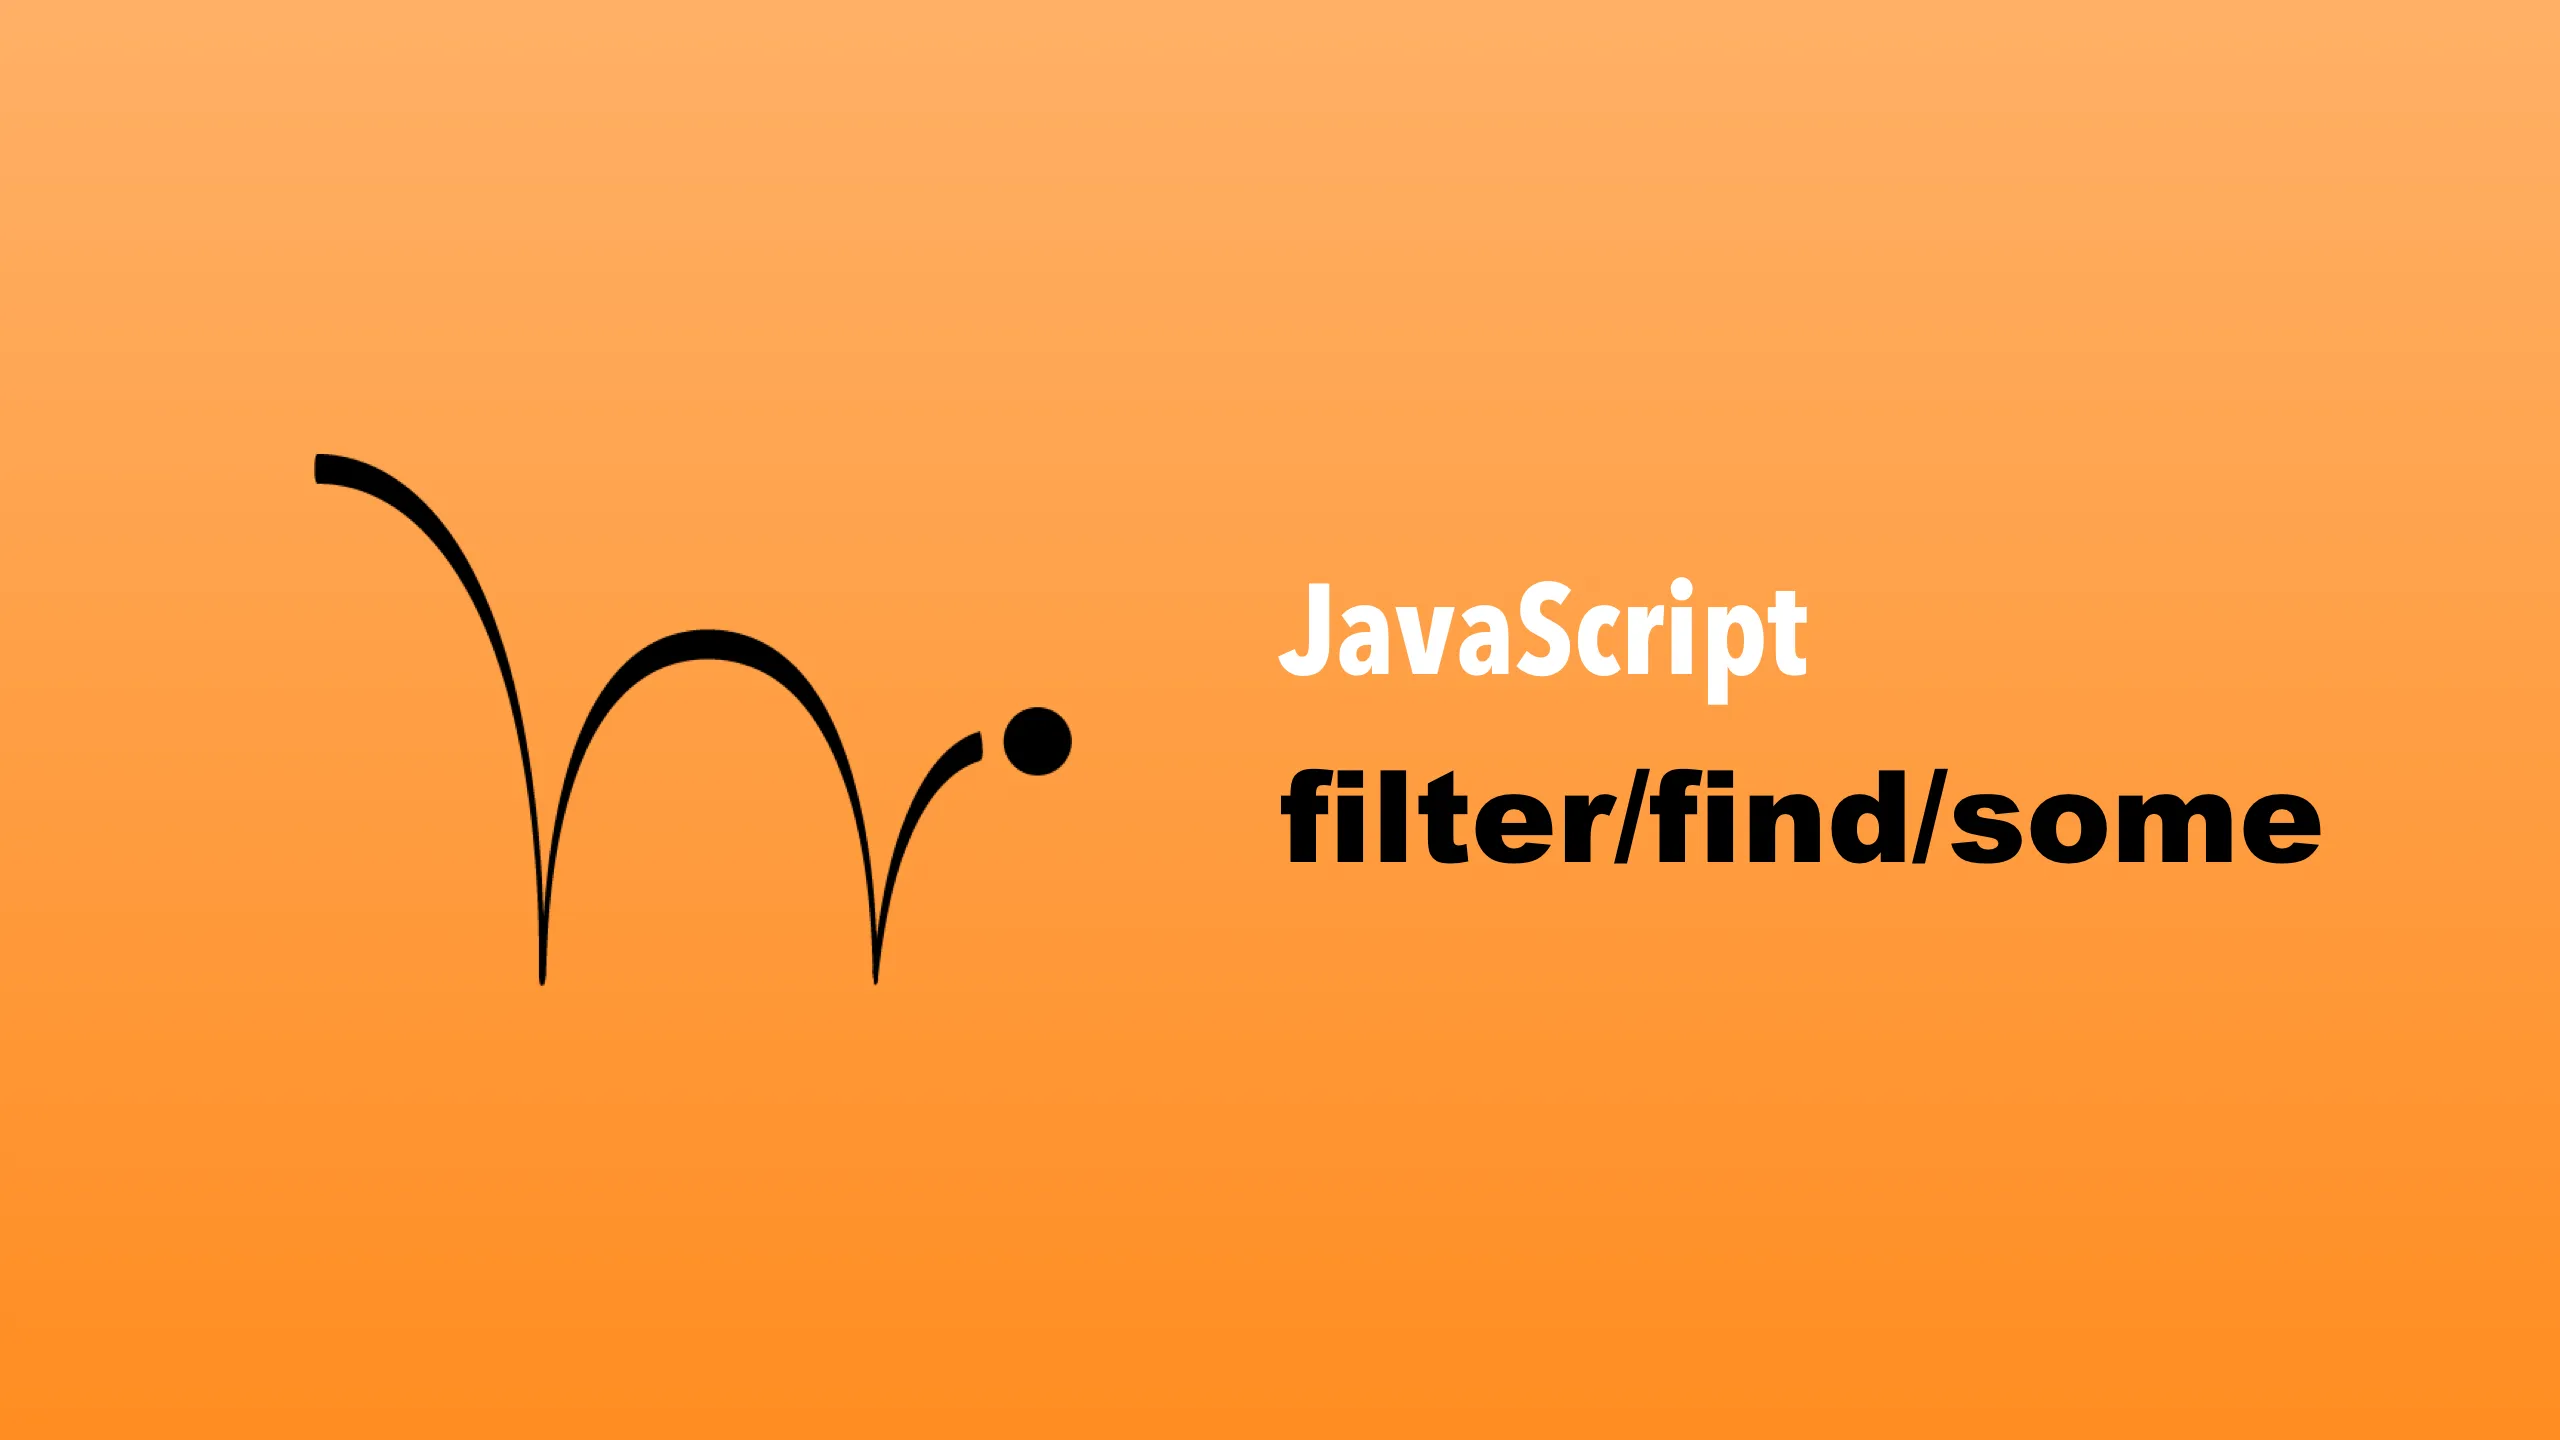 JavaScript Filter, Find, Some